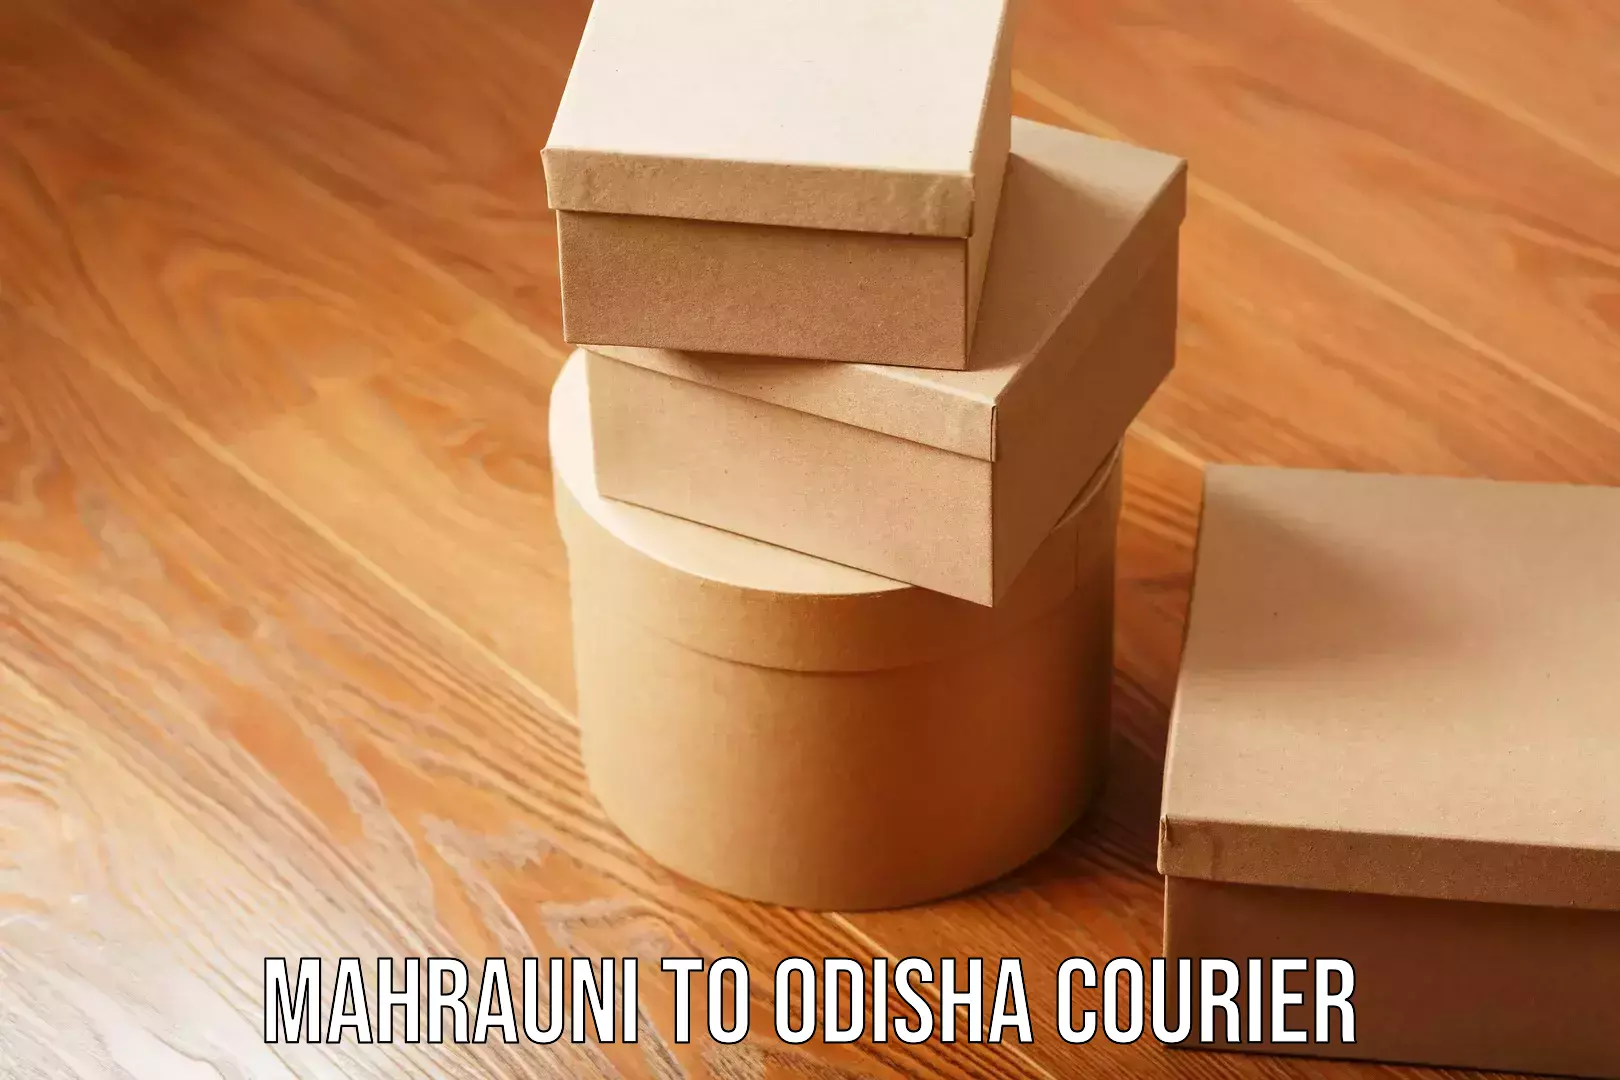 Customized furniture moving Mahrauni to Odisha